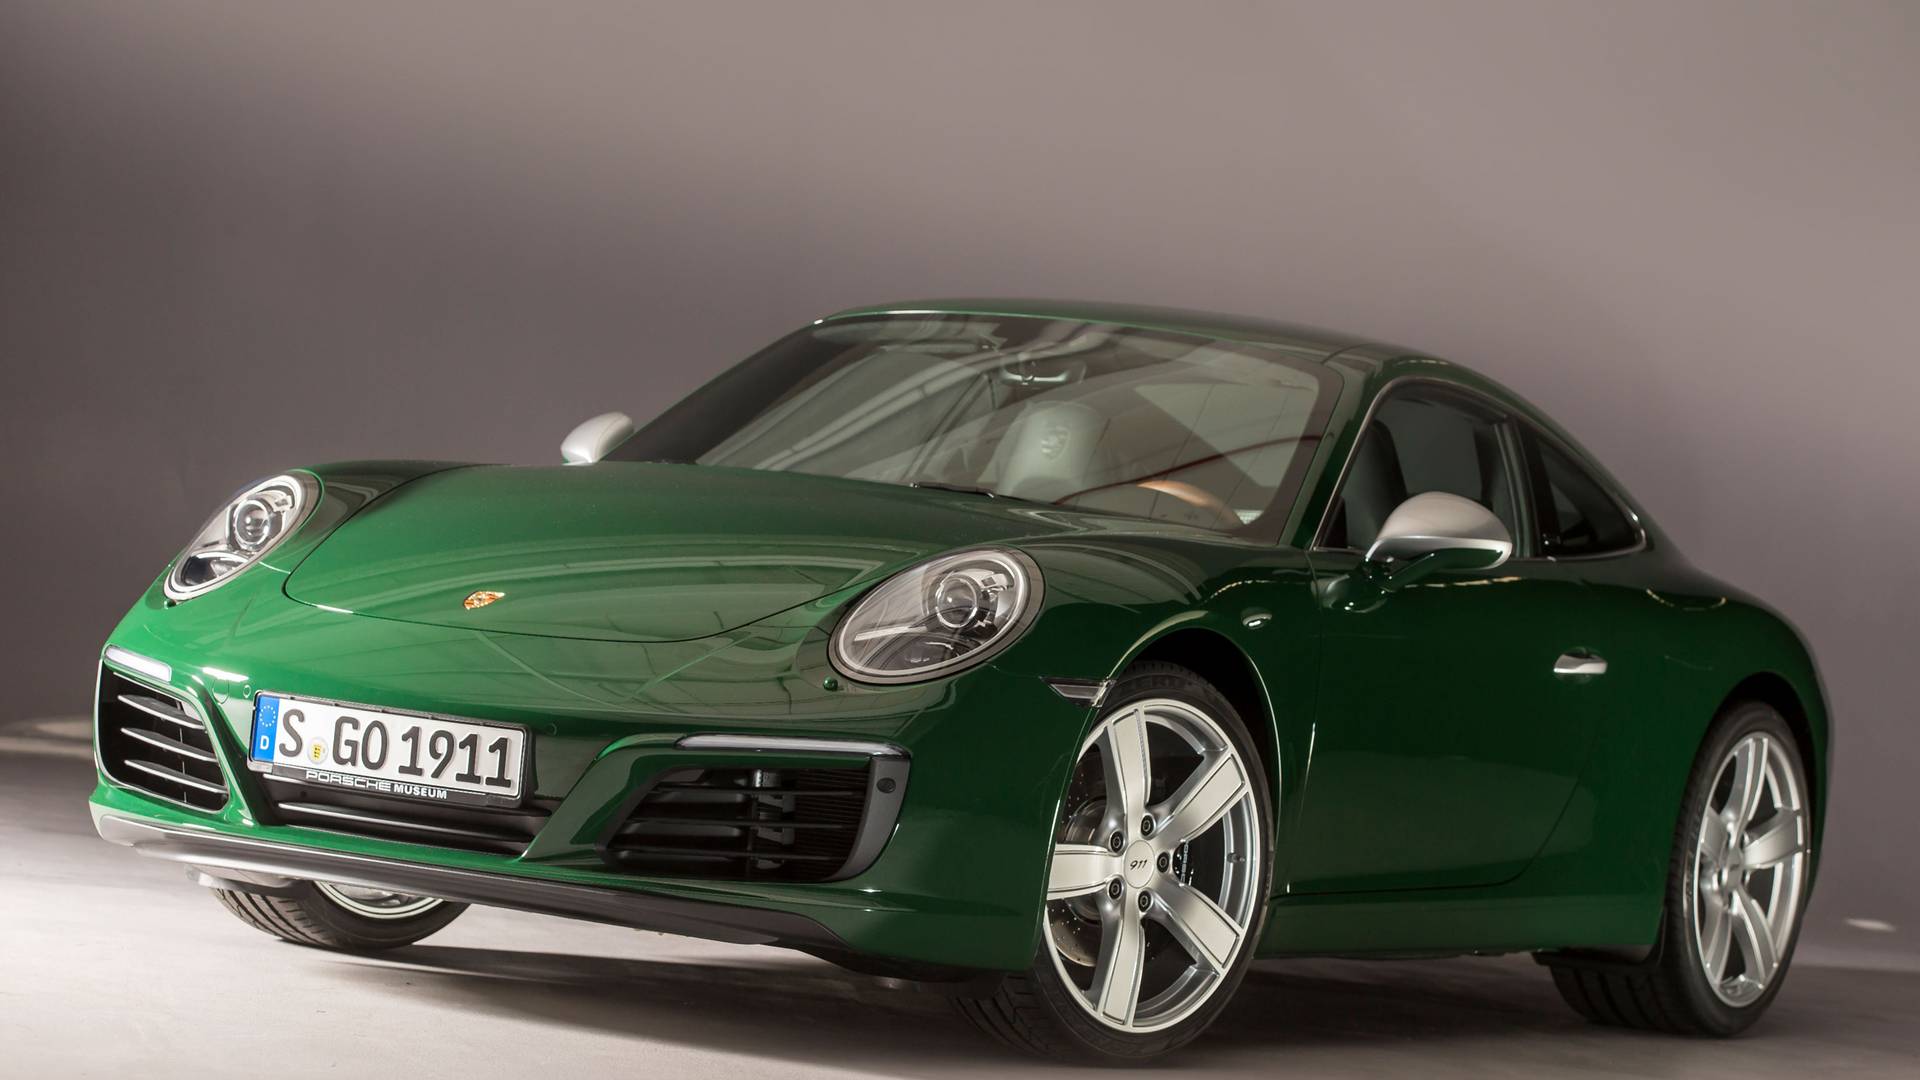 Elképesztő lépést tett a Porsche, a legújabb modelljük alig másfél millió forint!